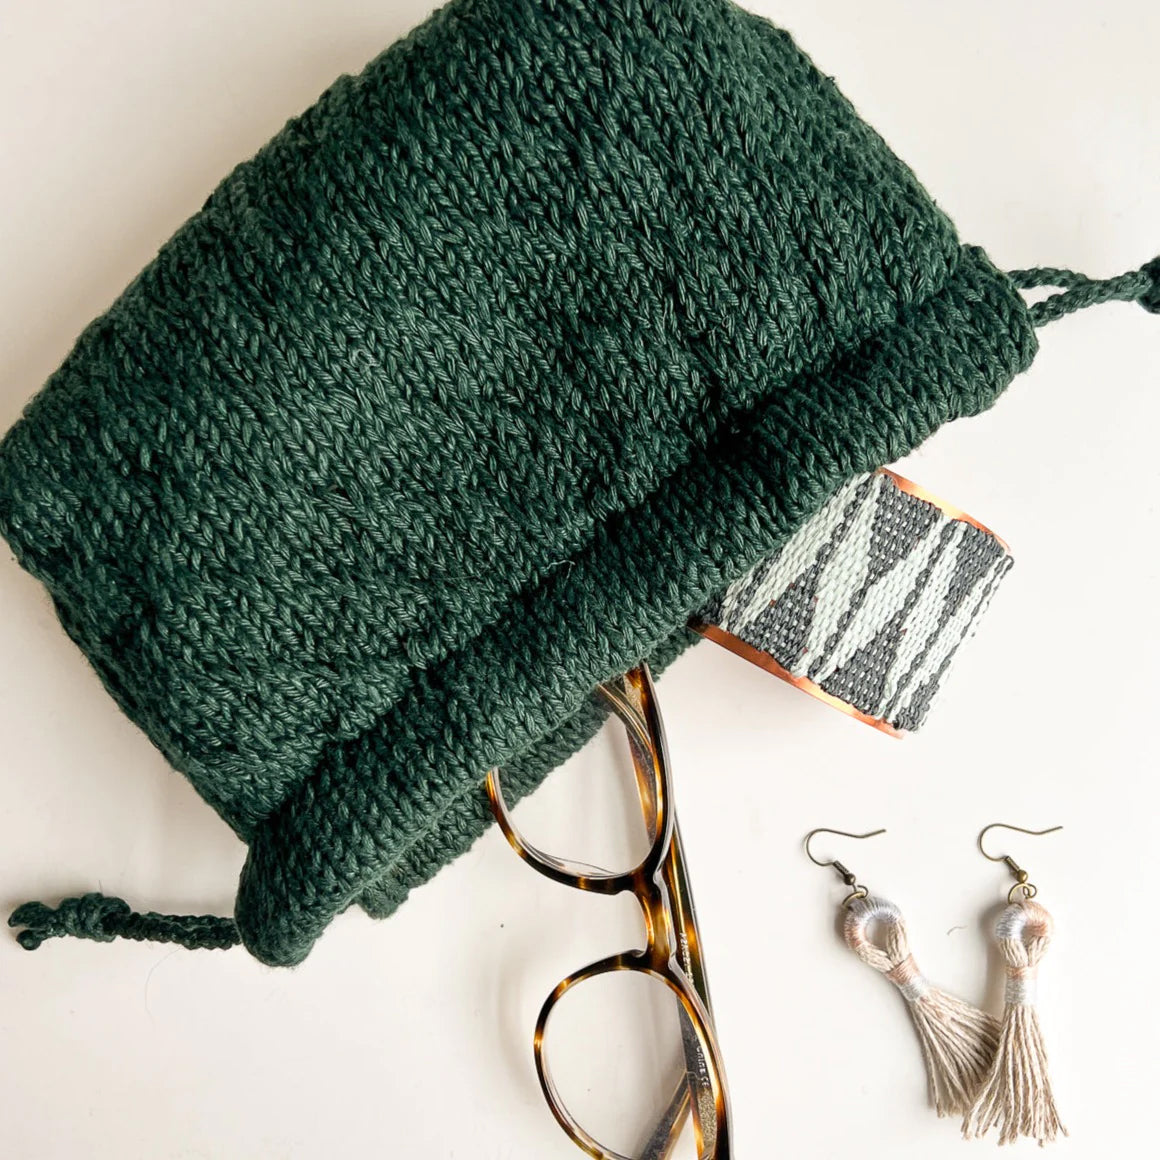 Flax and Twine Trellis Stitch Drawstring Bag Kit